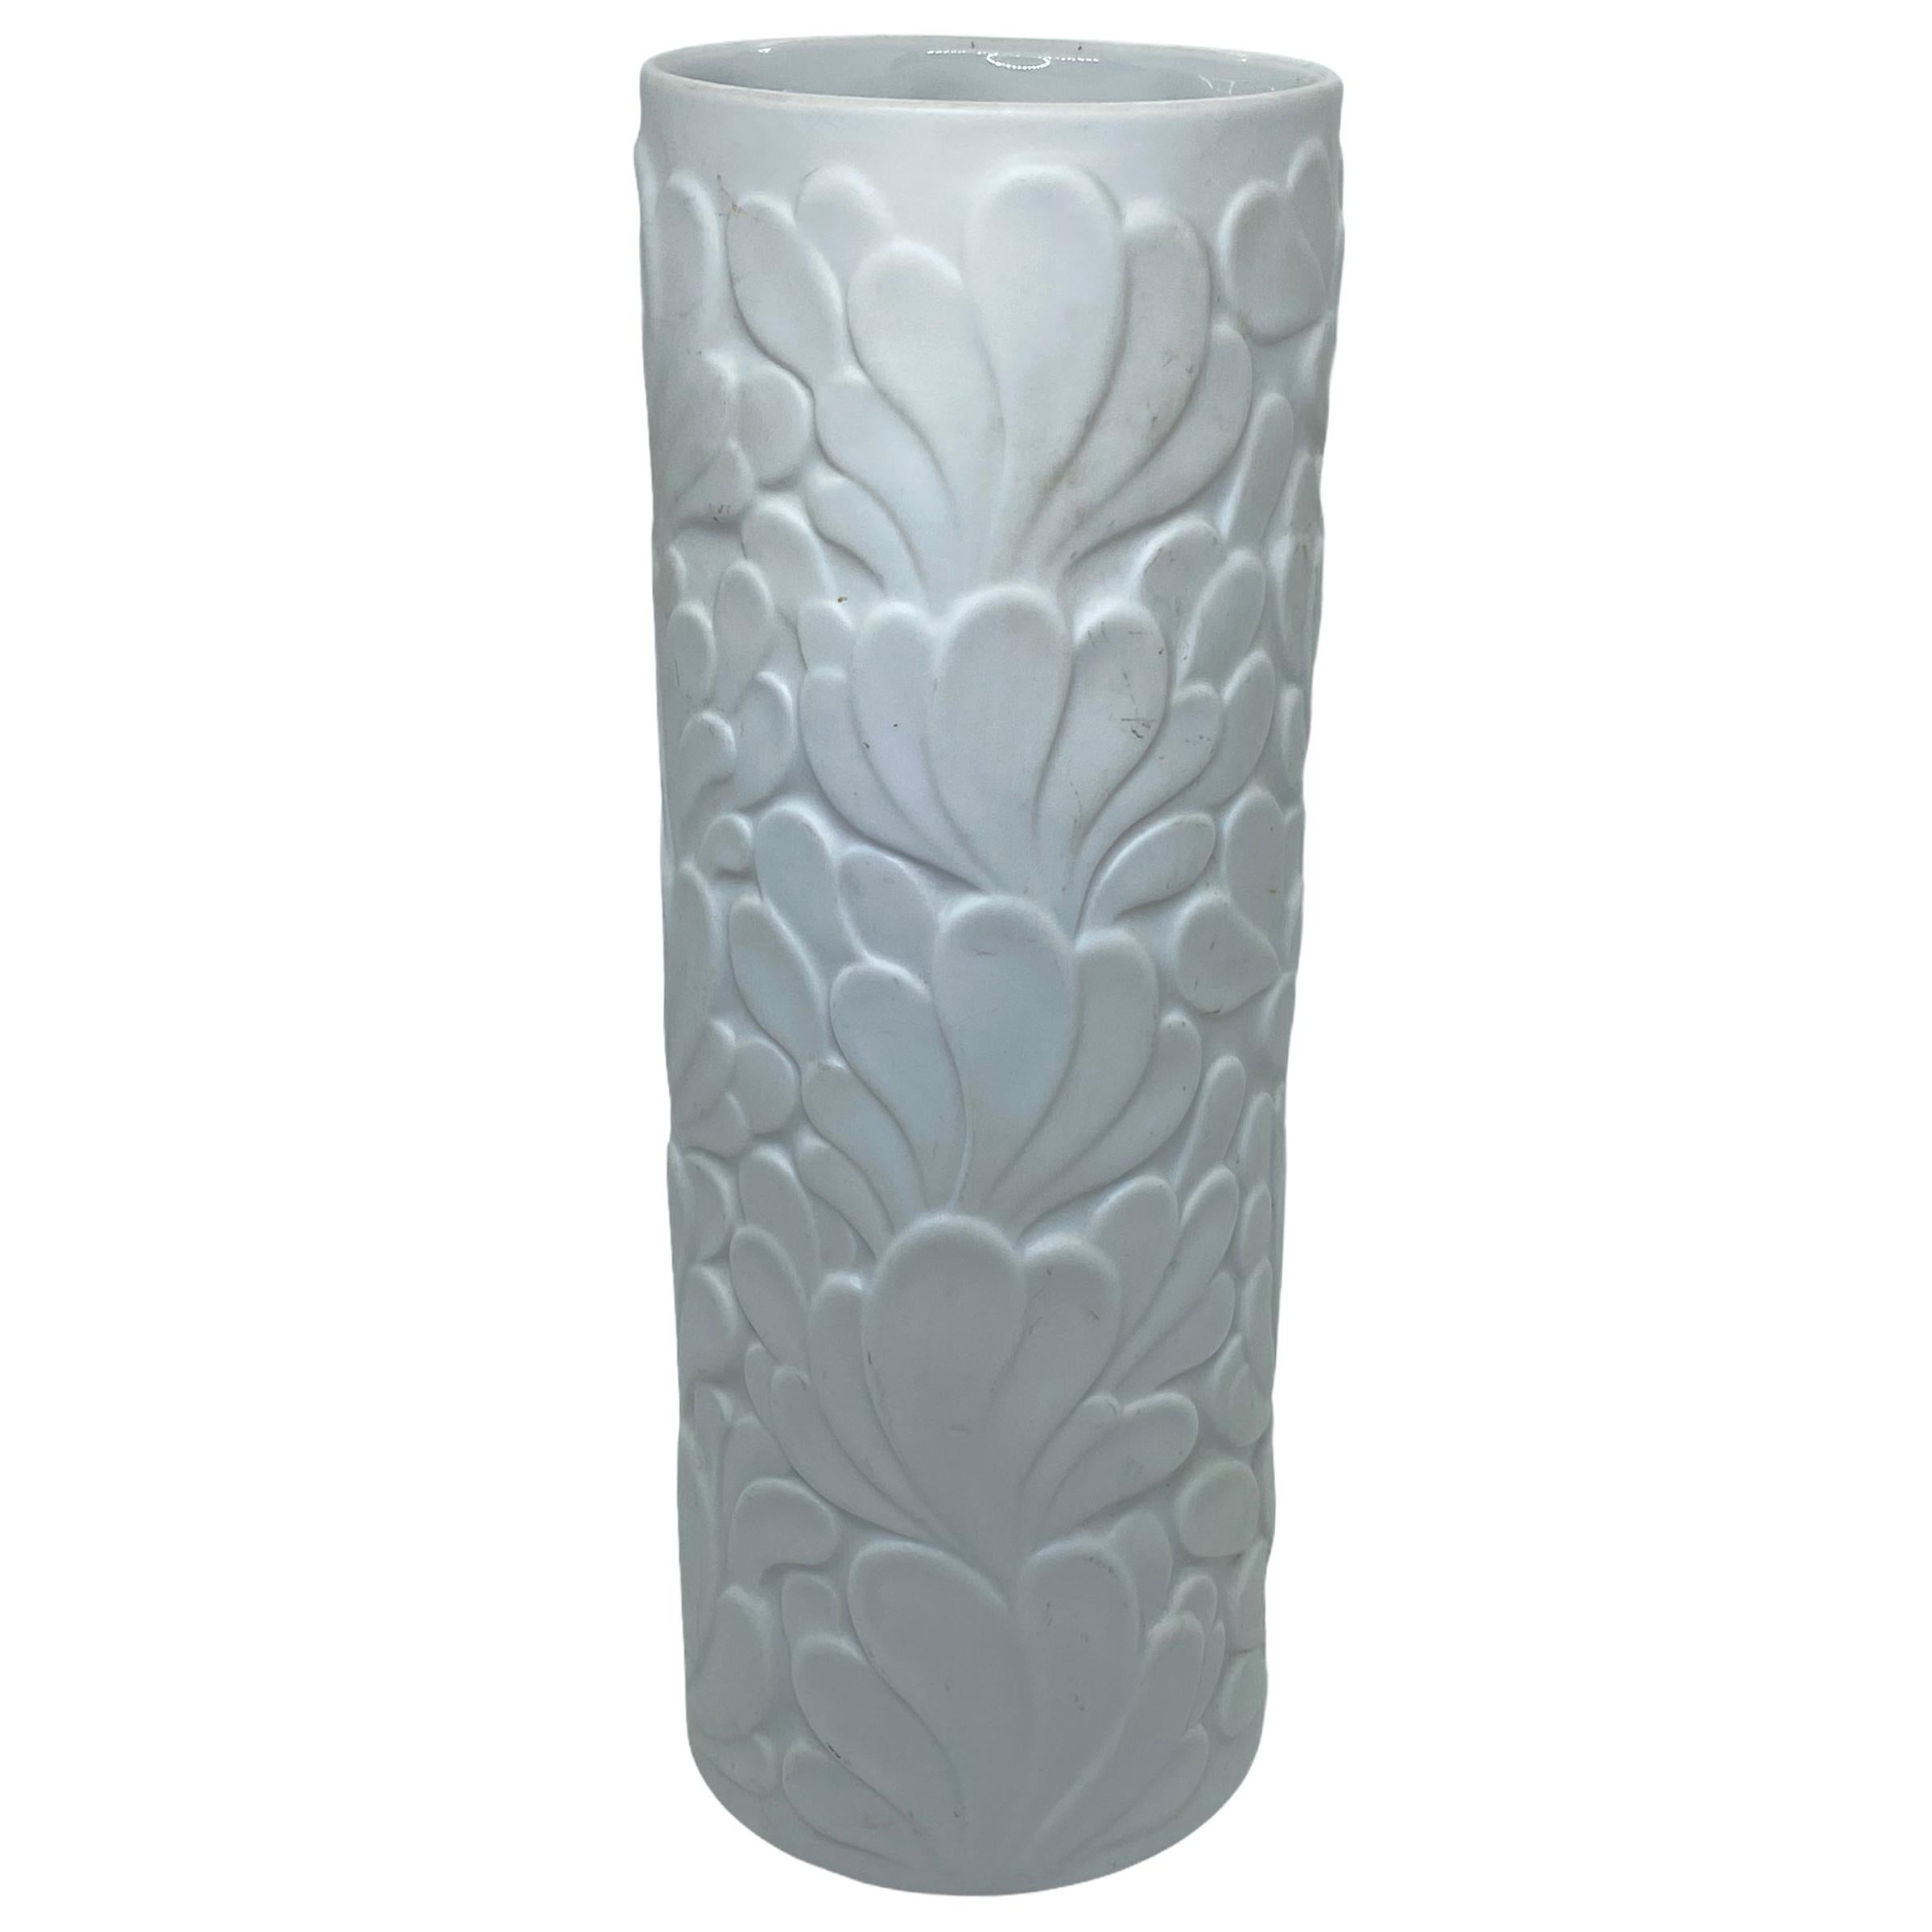  Hutschenreuther Bisquit Vase Achtziger Blumenform Tulpe Form matt design  